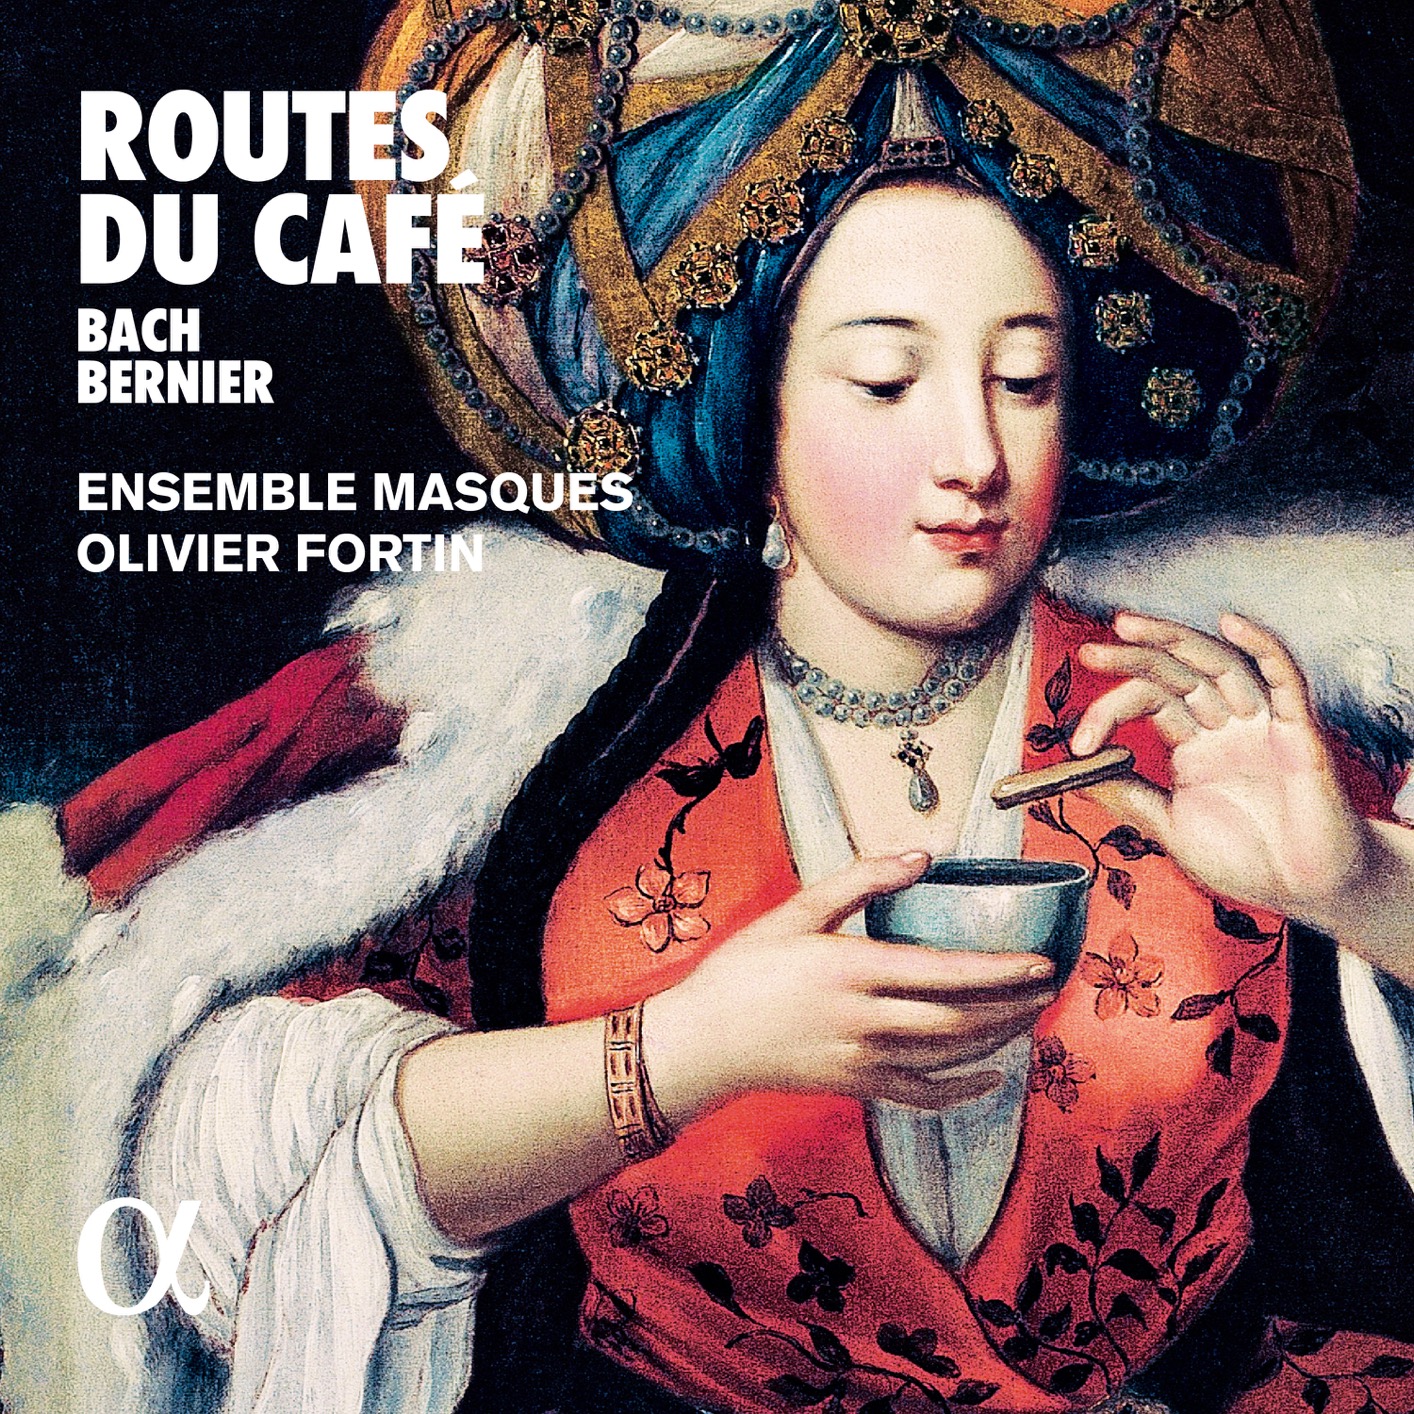 Ensemble Masques & Olivier Fortin – Bach & Bernier Routes du cafe (2019) [FLAC 24bit/96kHz]